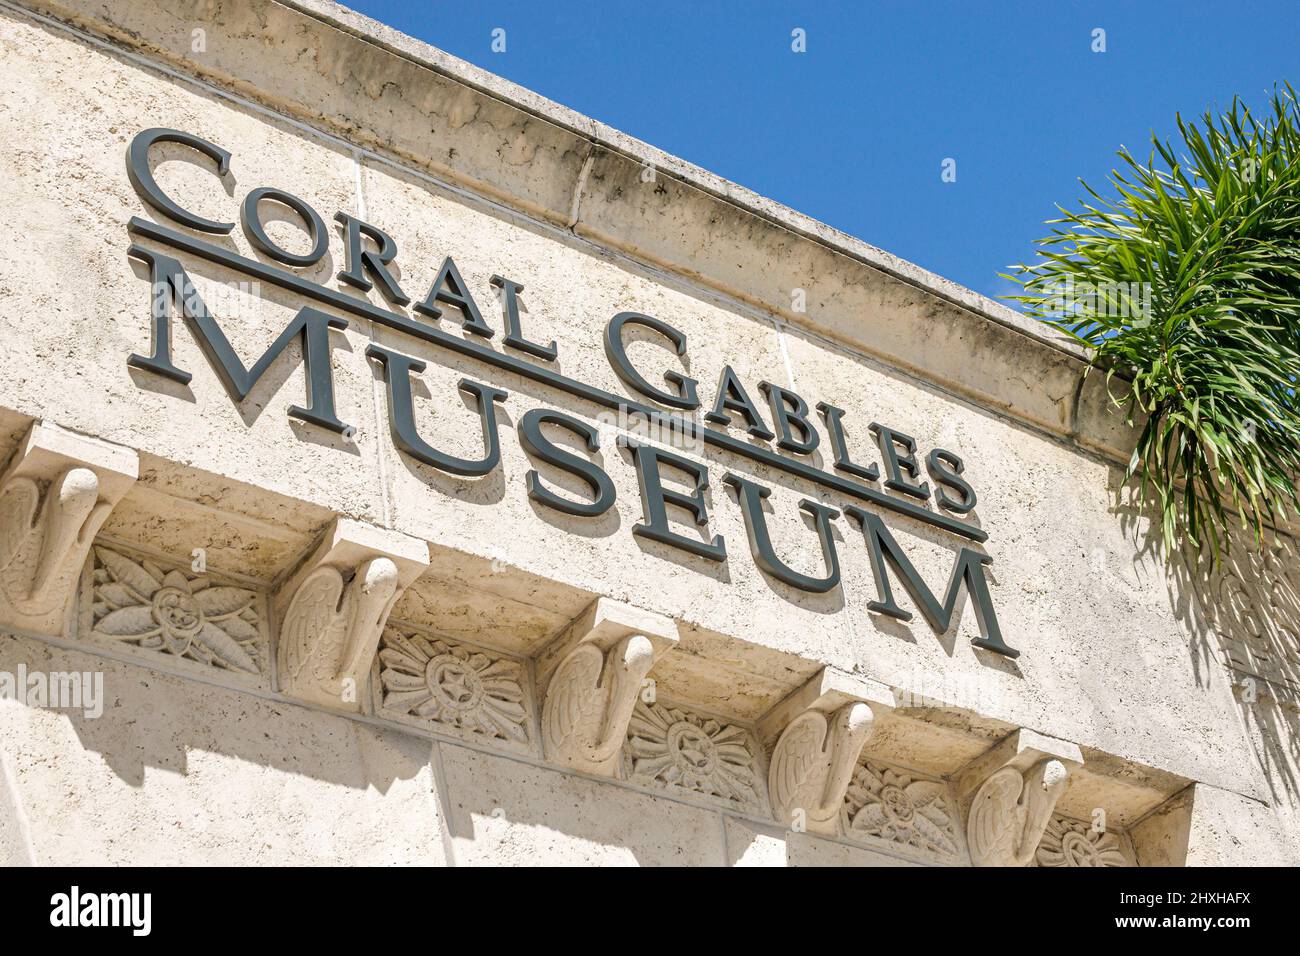 Coral Gables Florida Miami panneau du musée Coral Gables entrée extérieure Banque D'Images